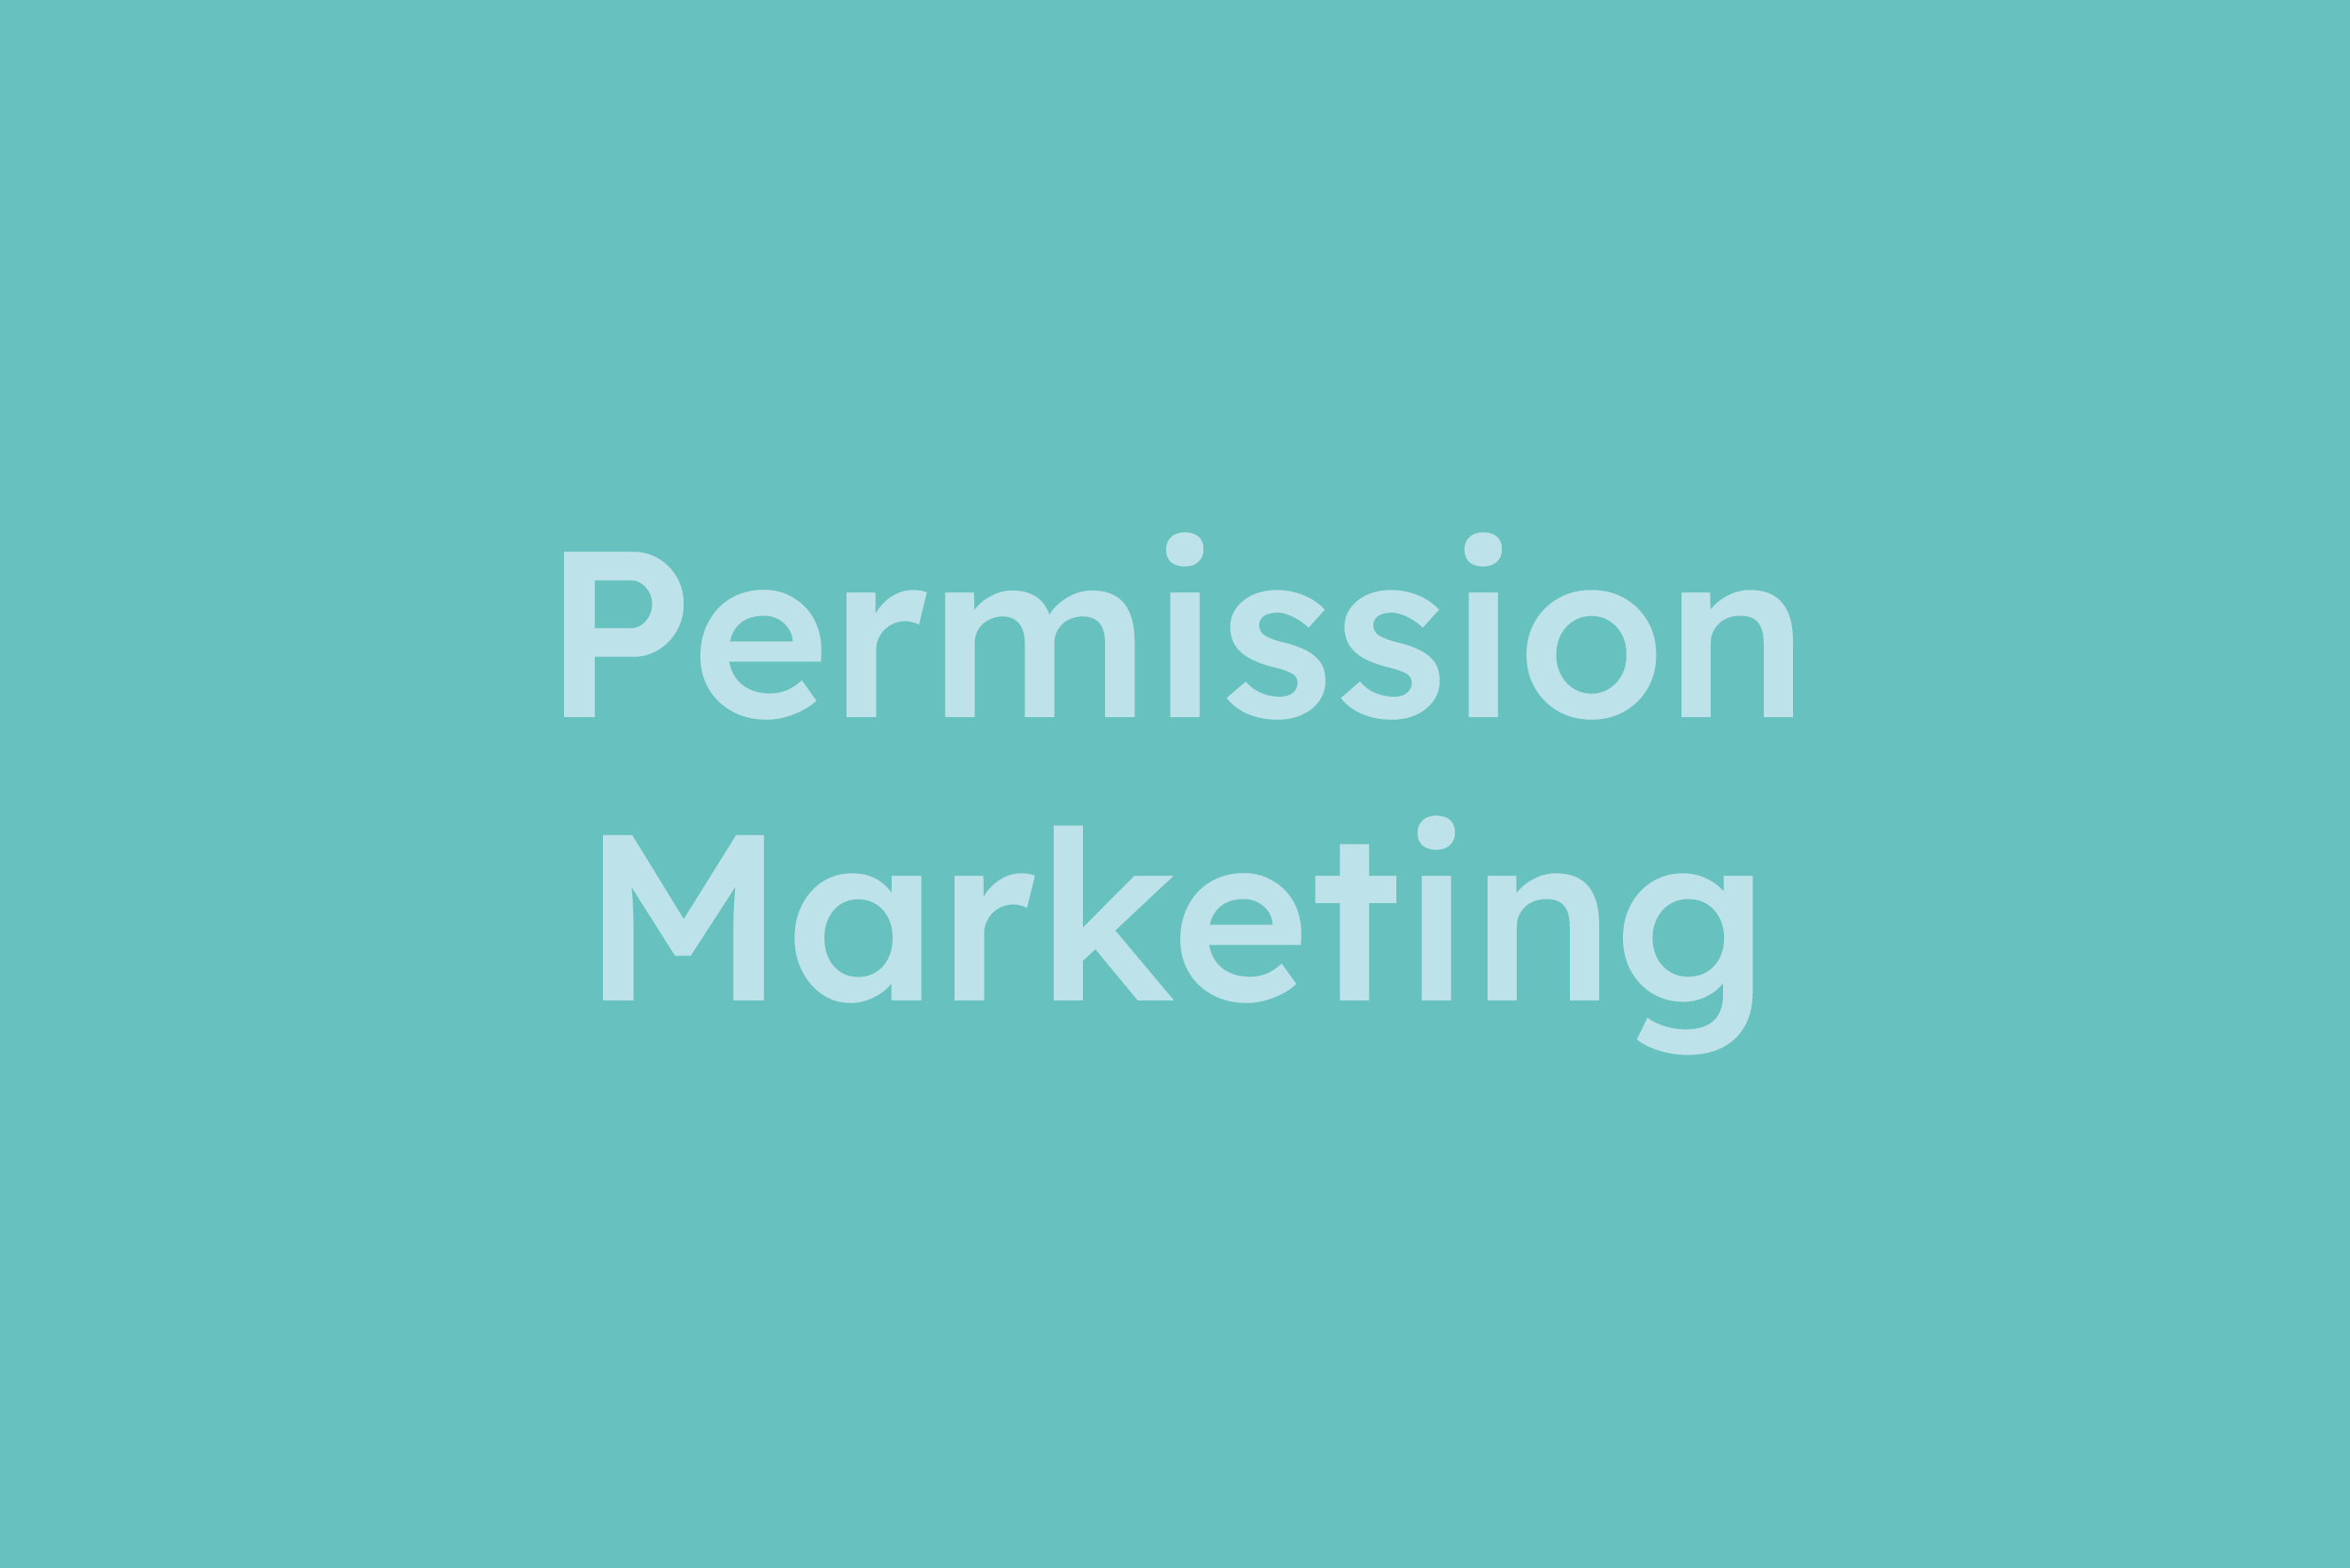 Permission Marketing erklärt im Glossar von Campaign